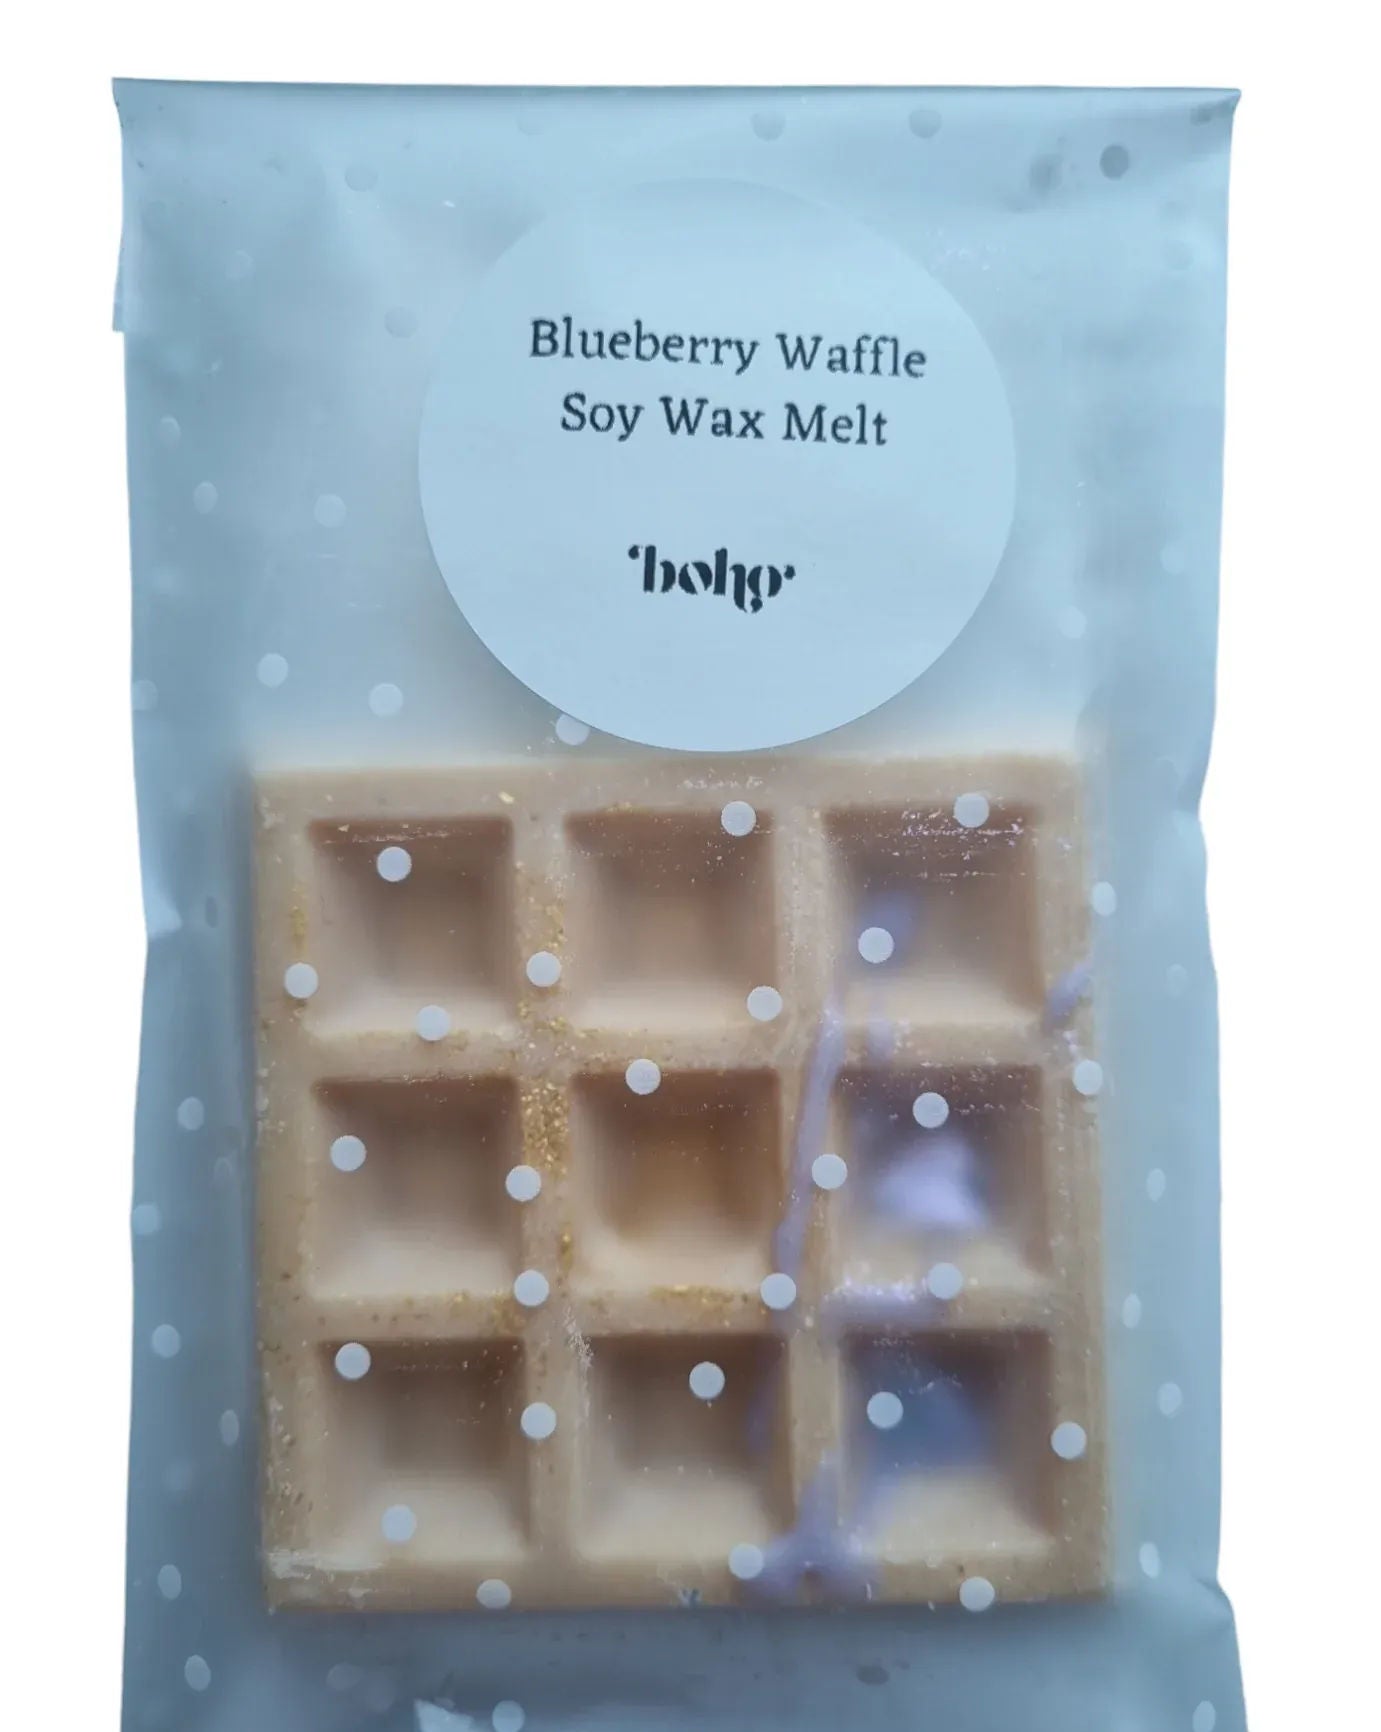 Blueberry Waffle wax Melt